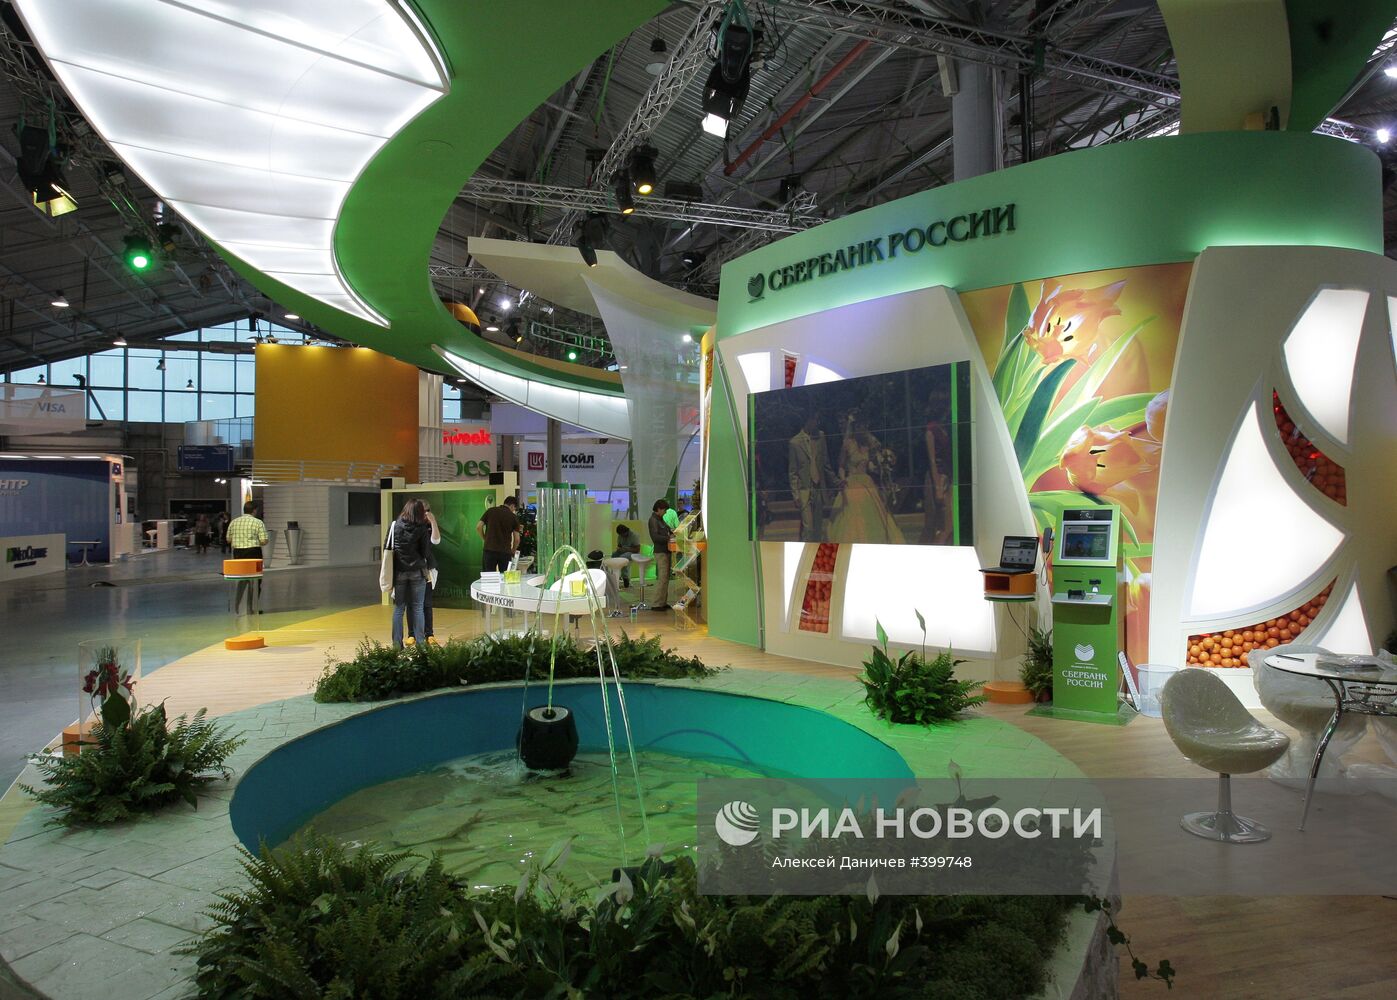 Подготовка к Экономическому форуму в Санкт-Петербурге